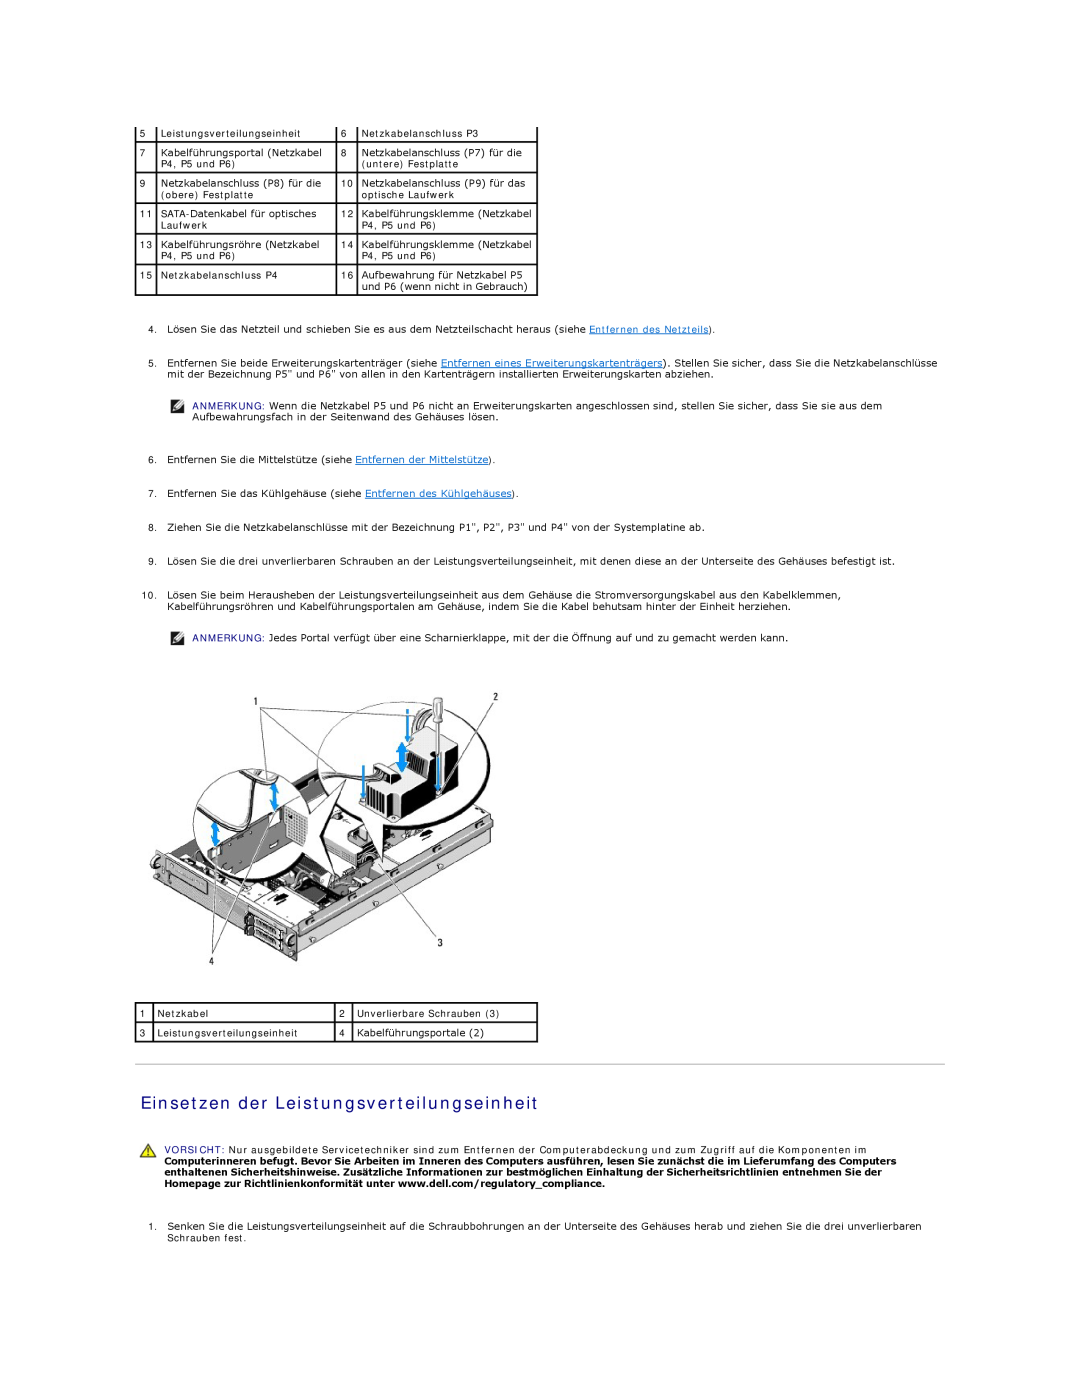 Dell 5400 manual Einsetzen der Leistungsverteilungseinheit 